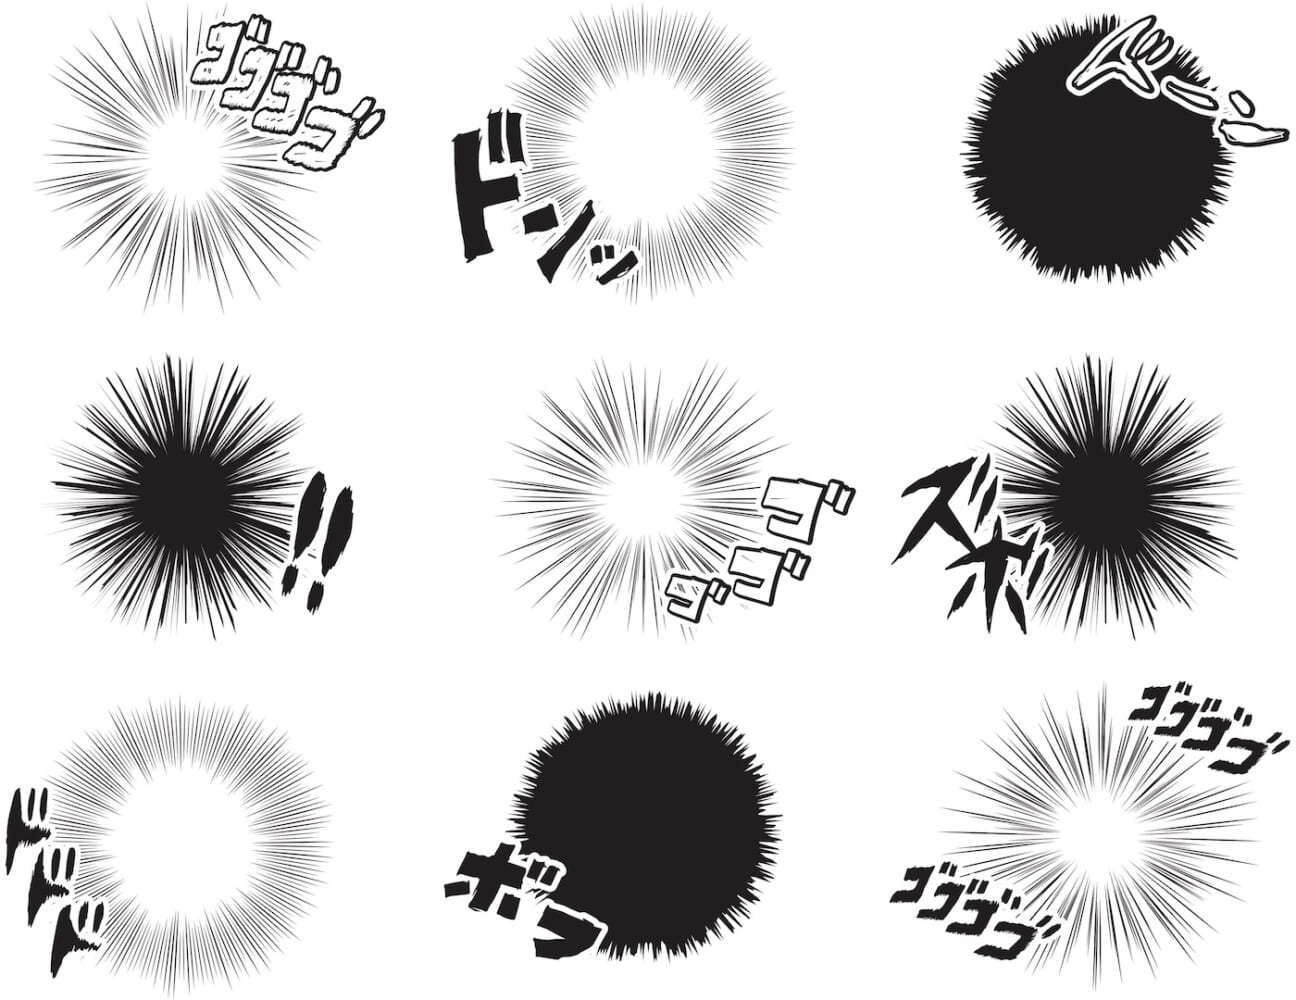 Japanese manga effect production image line drawing (Japanese onomatopoeia)